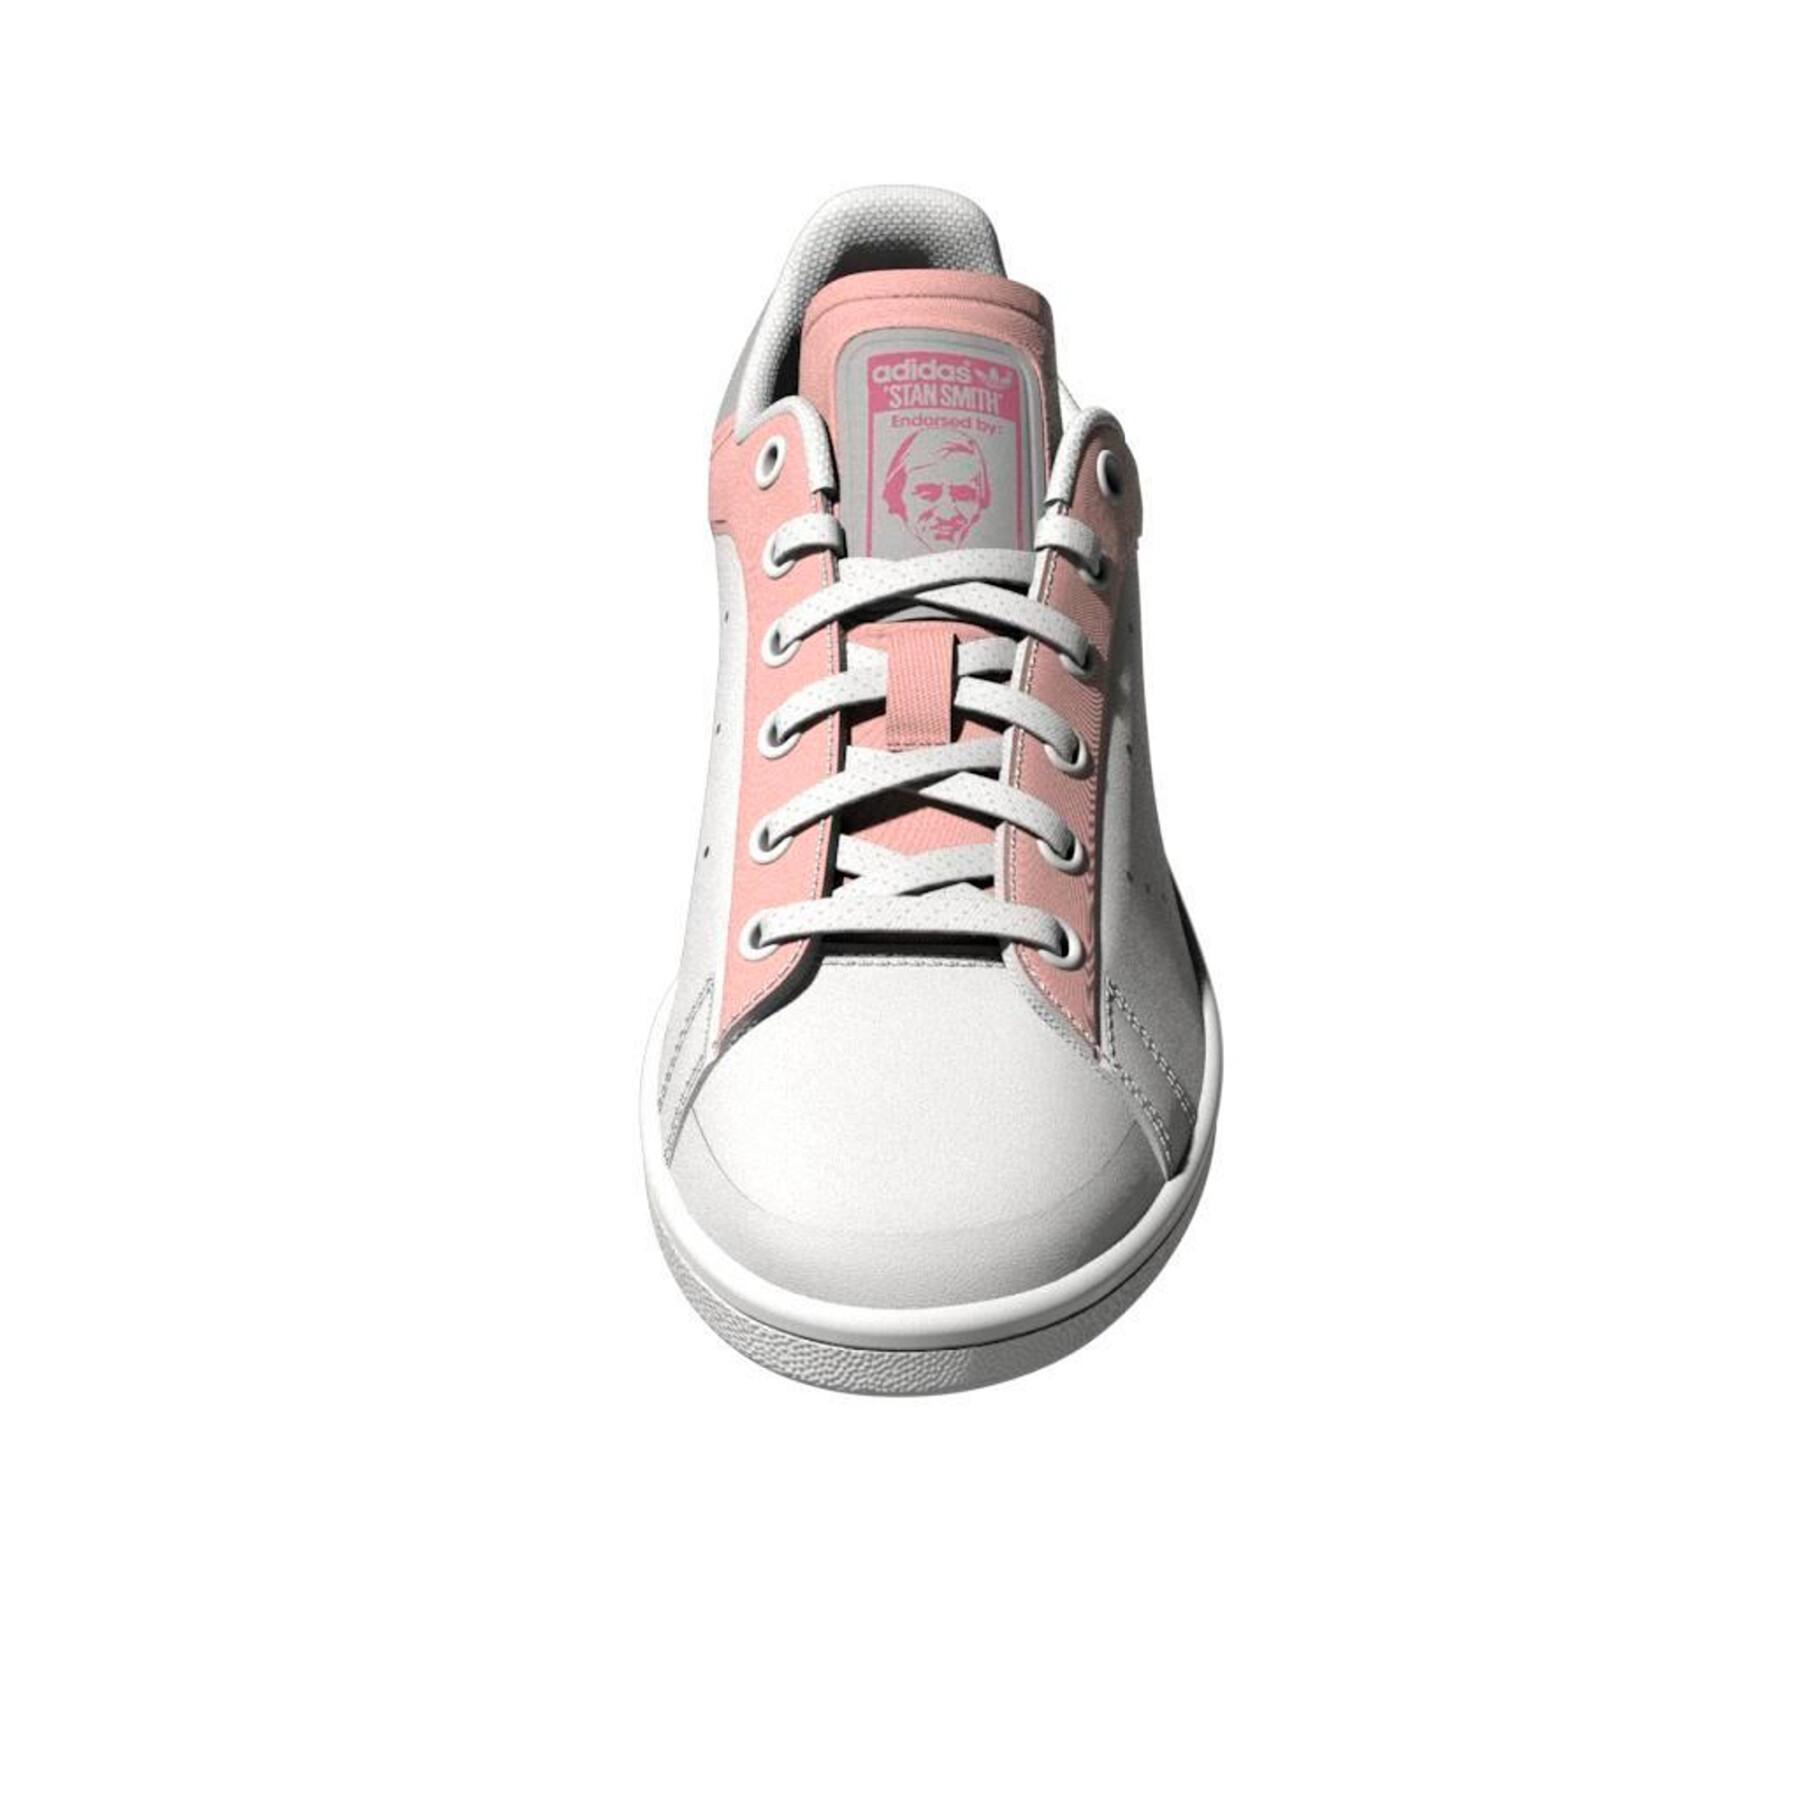 Turnschuhe für Mädchen adidas Originals Stan Smith